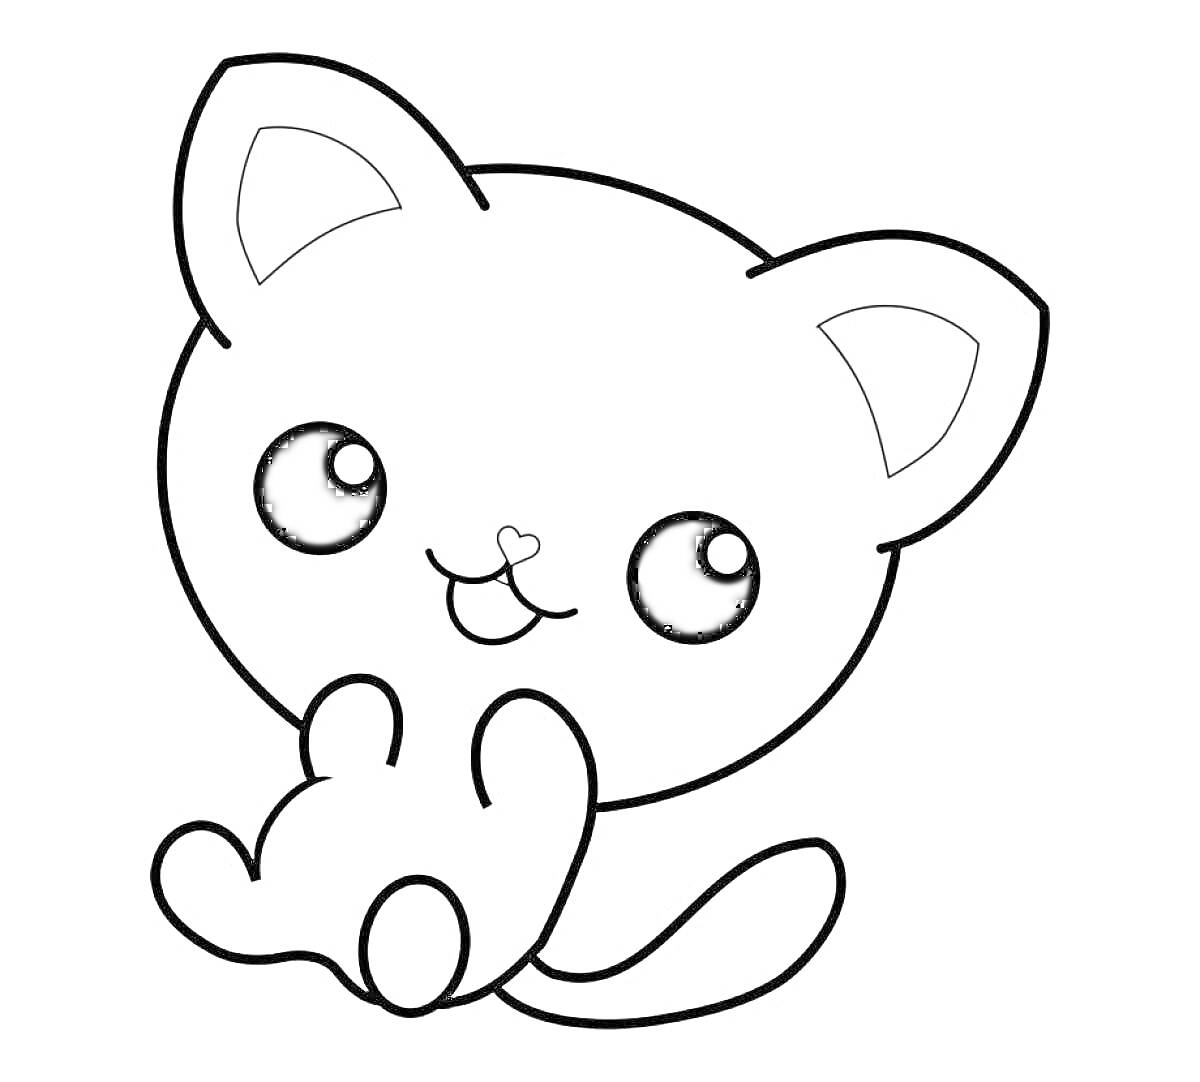 Раскраска Котик с большими глазами и маленьким ртом, сидящий с поднятыми лапками